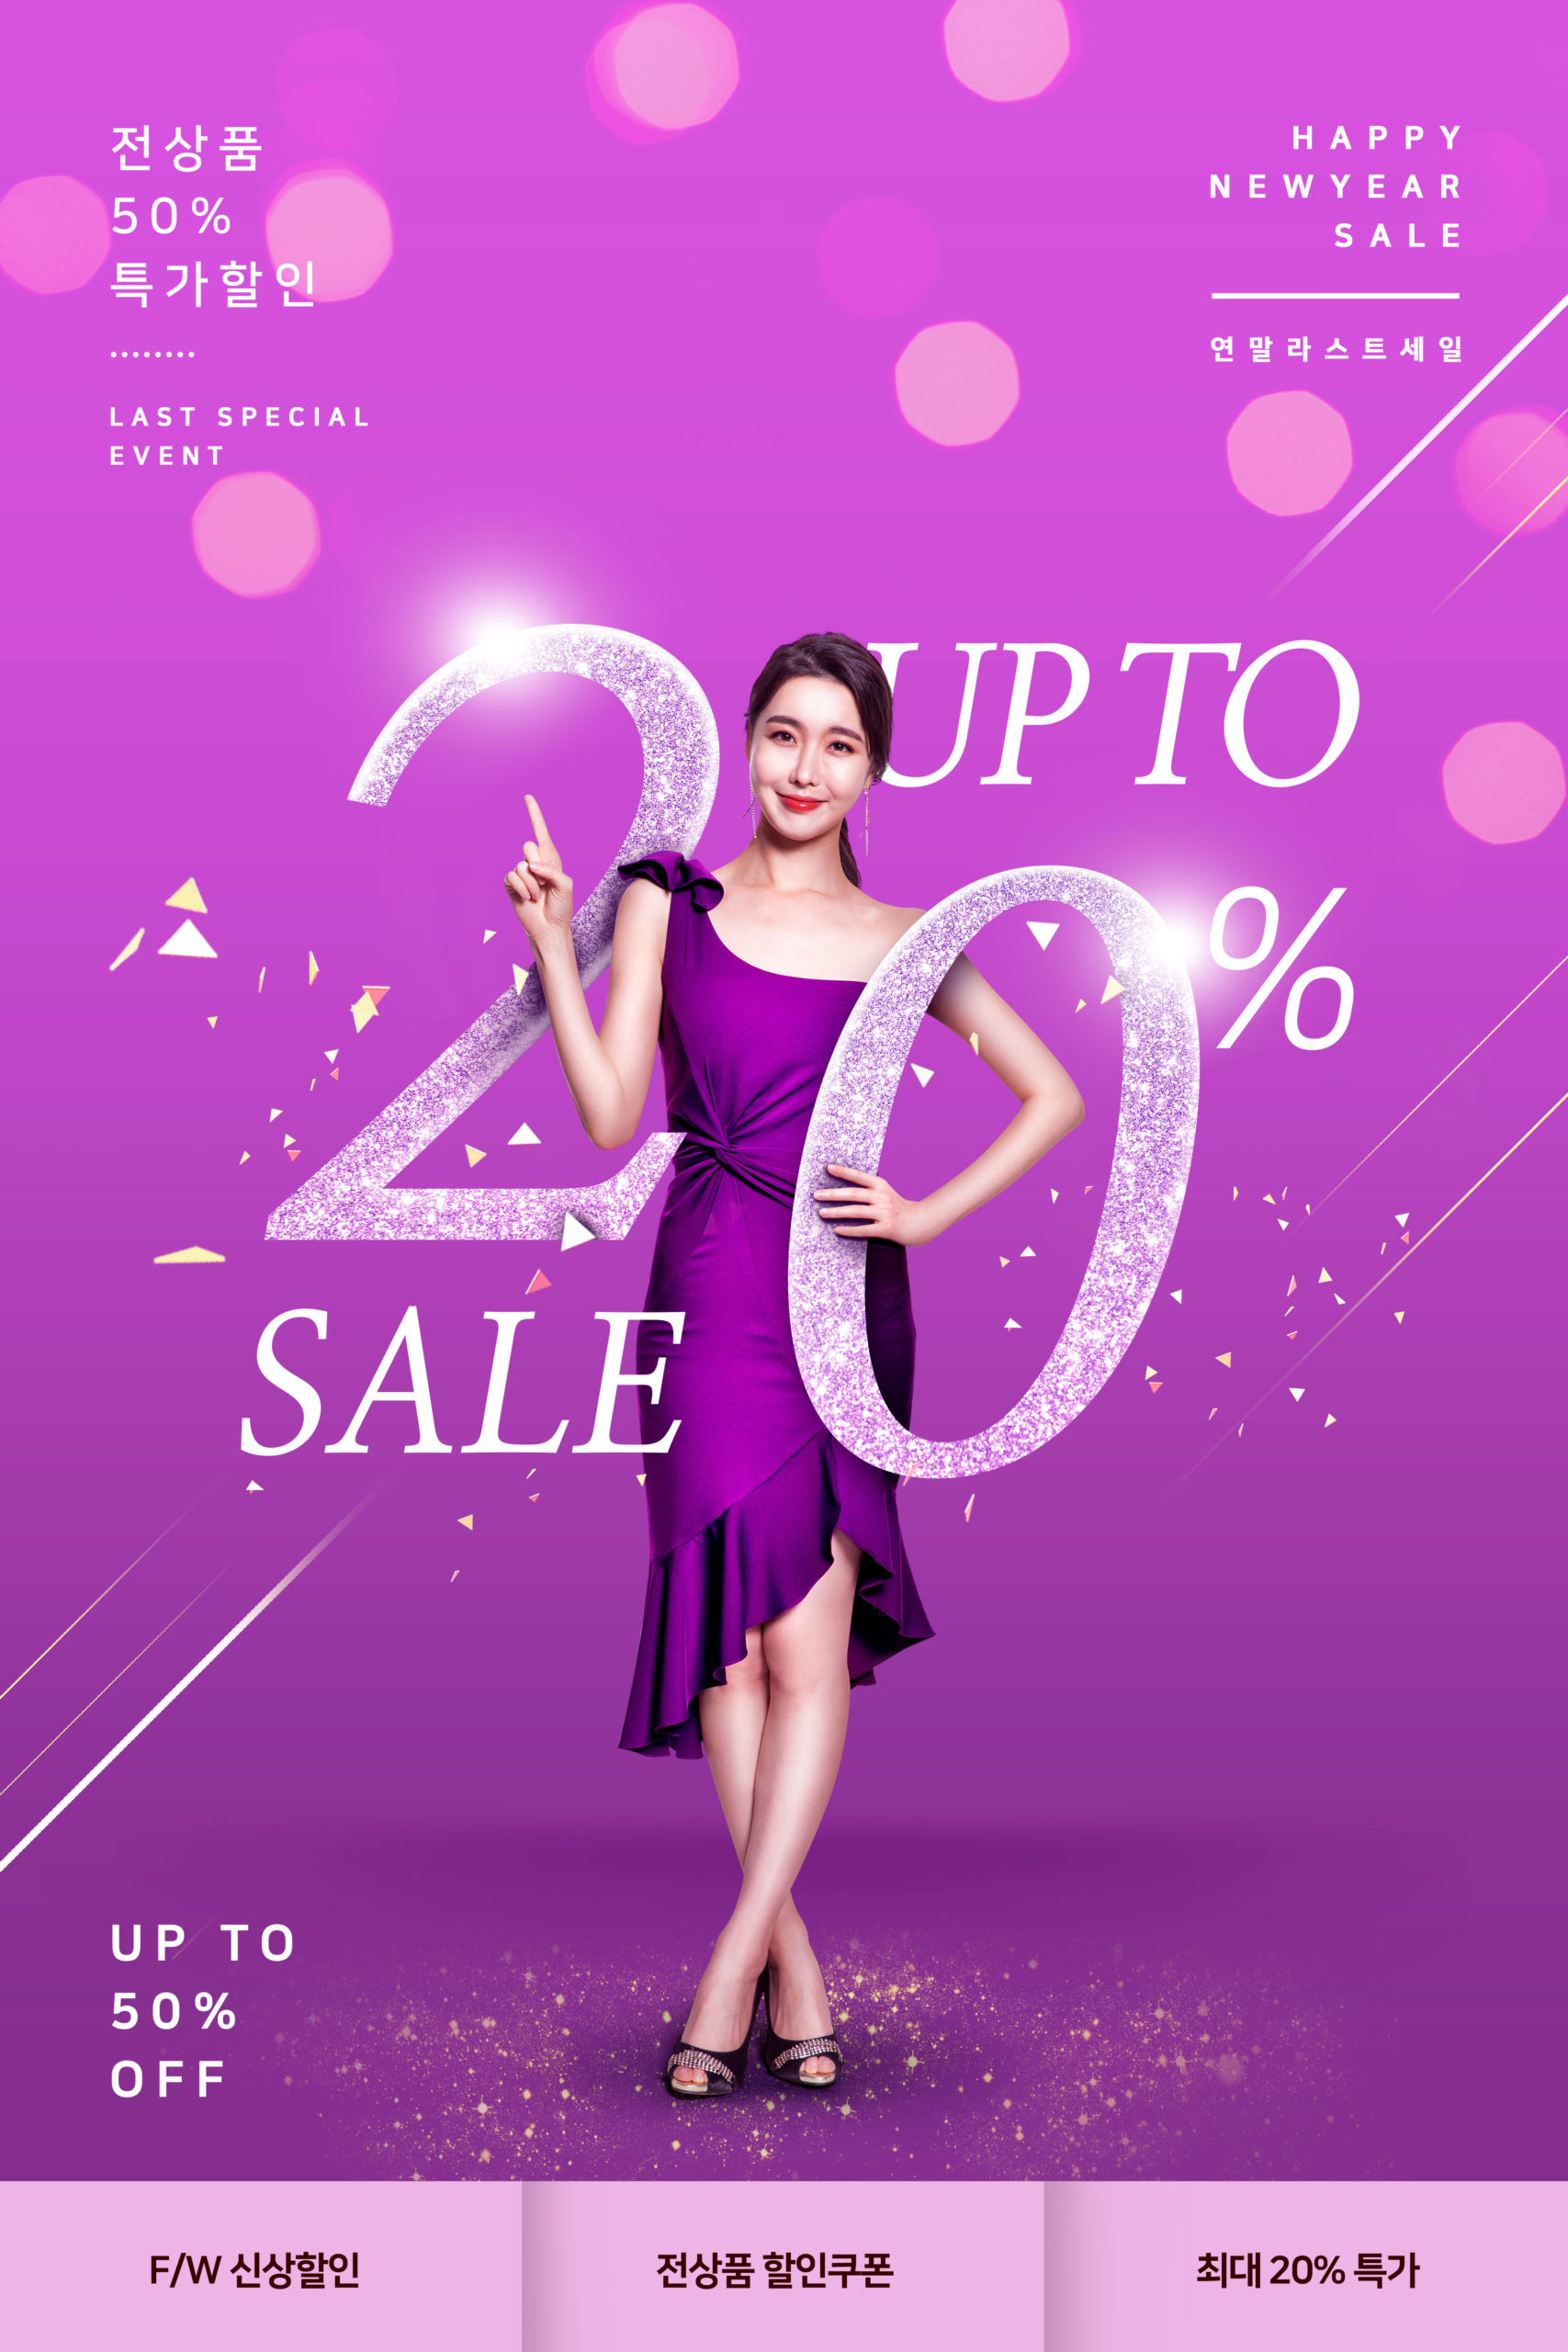 紫色主题新年折扣促销购物活动推广海报PSD素材蚂蚁素材精选模板插图